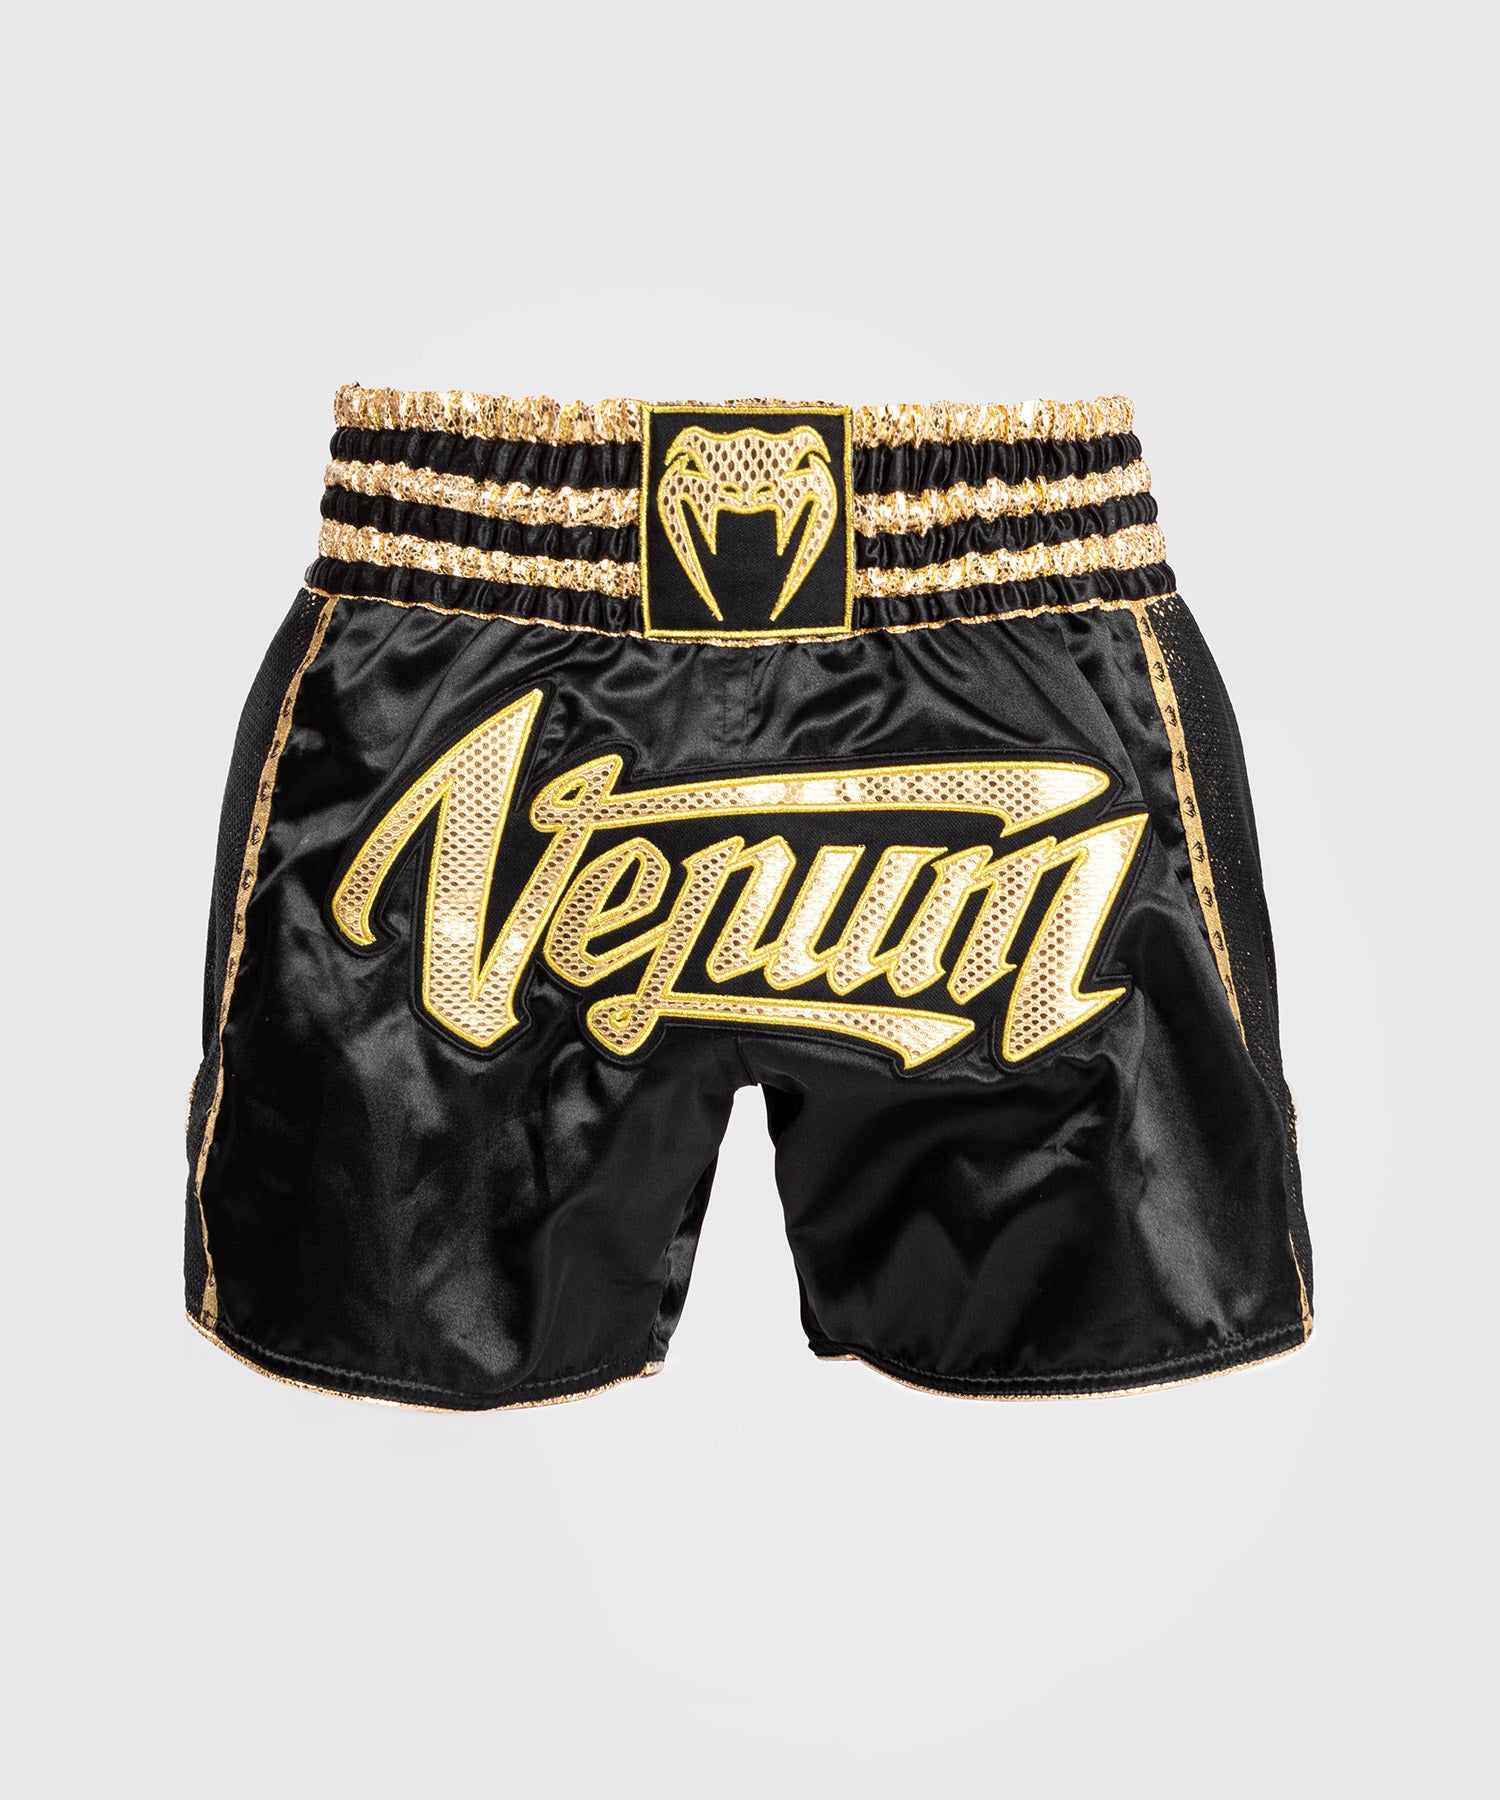  Pantalones cortos de boxeo Muay Thai; patrones tradicionales de  estilo de estrella tailandesa dorado-negro con letras tailandesas doradas Muay  Thai, Letra tailandesa dorada negra con oro Muay Thai : Ropa, Zapatos